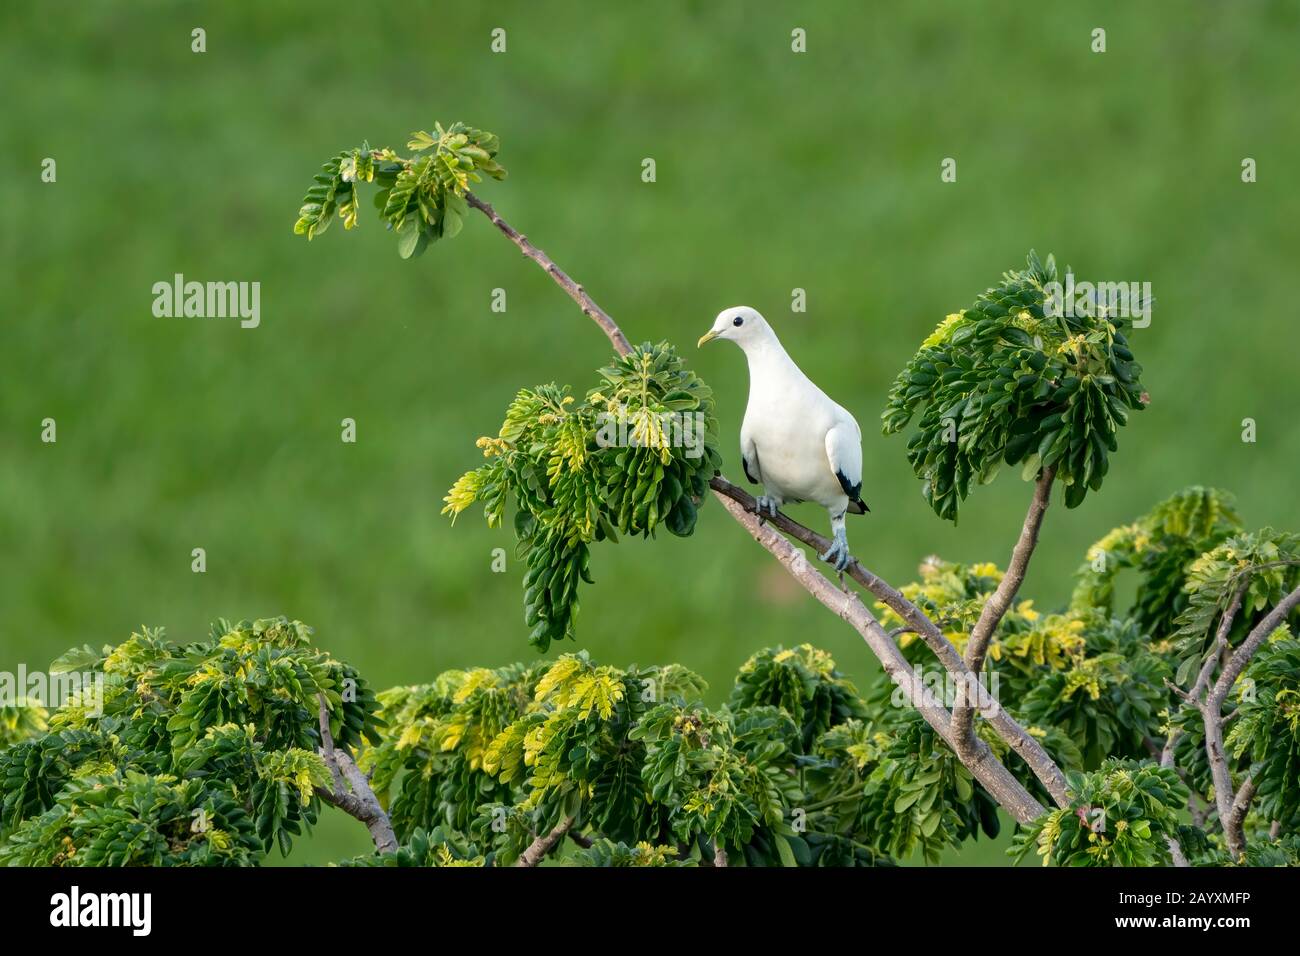 Torresian Imperial pigeon, Ducula bicolor, adulte perché dans l'arbre, Cairns, Queensland, Australie 12 janvier 2020 Banque D'Images